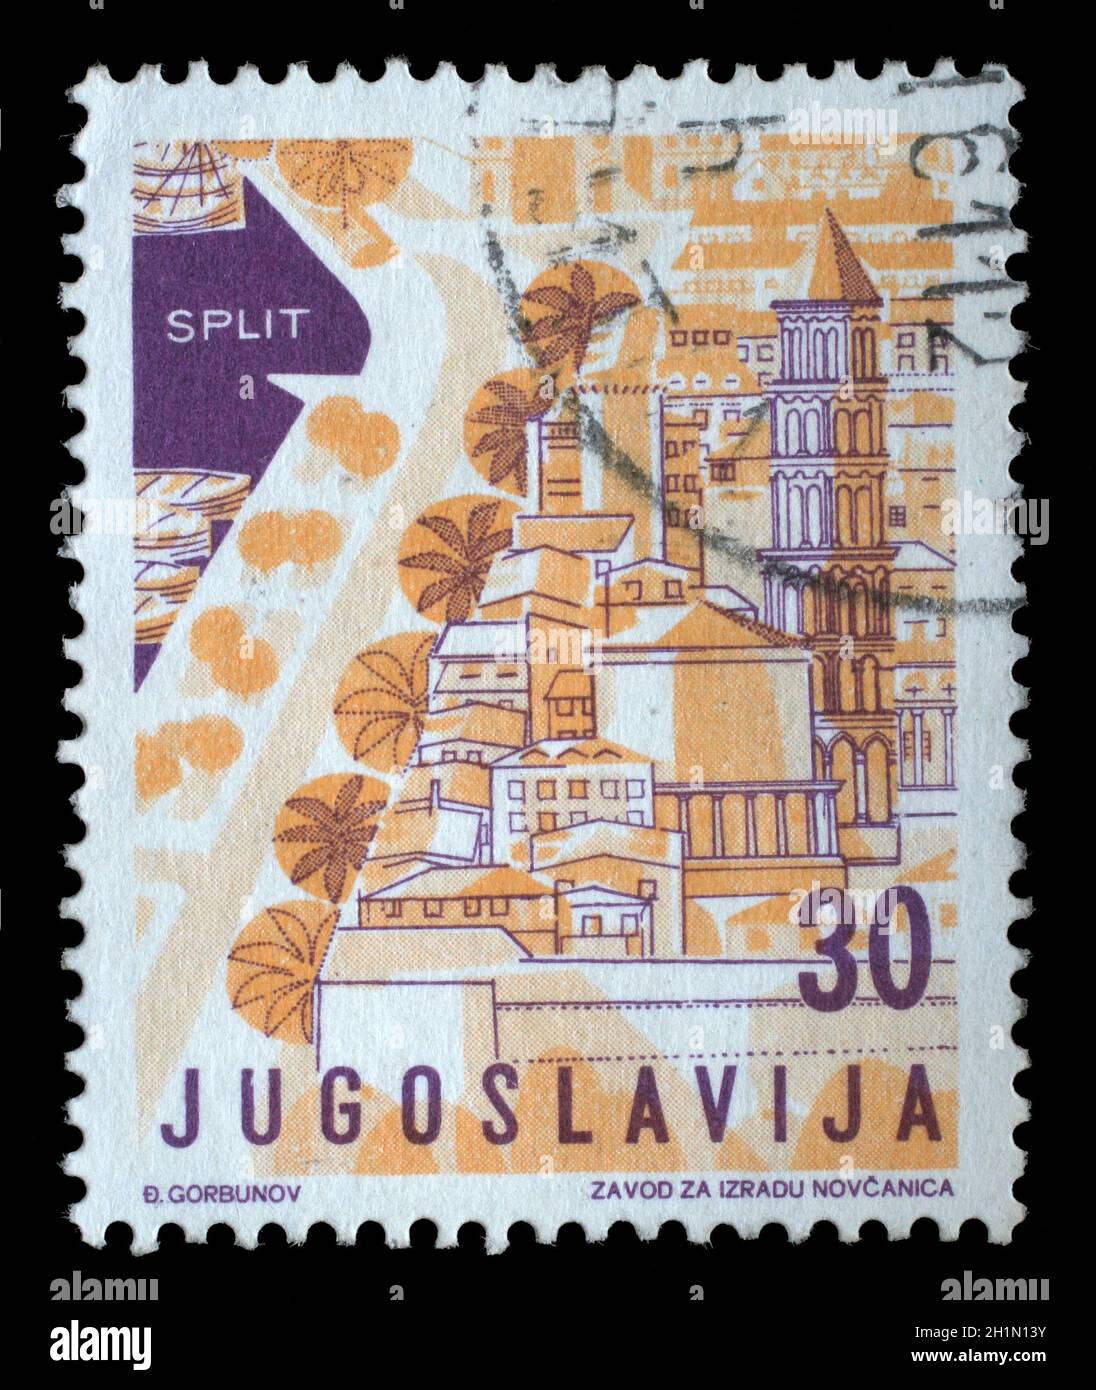 Timbres en Yougoslavie à partir de la question du tourisme local montre Split, Croatie, vers 1959. Banque D'Images